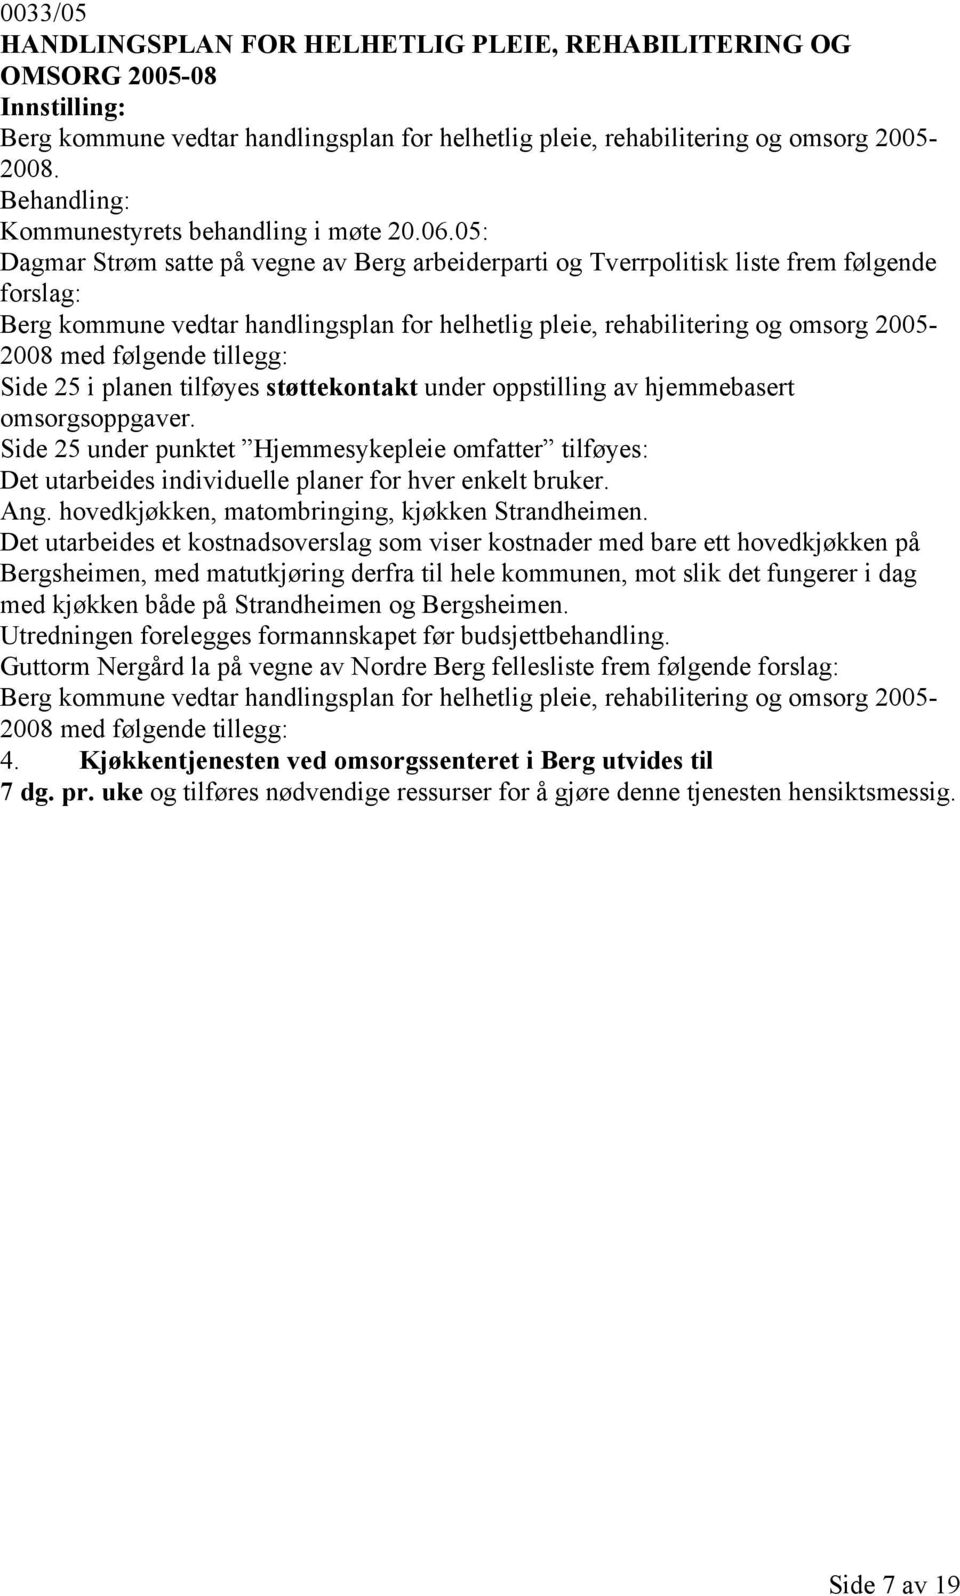 05: Dagmar Strøm satte på vegne av Berg arbeiderparti og Tverrpolitisk liste frem følgende forslag: Berg kommune vedtar handlingsplan for helhetlig pleie, rehabilitering og omsorg 2005-2008 med